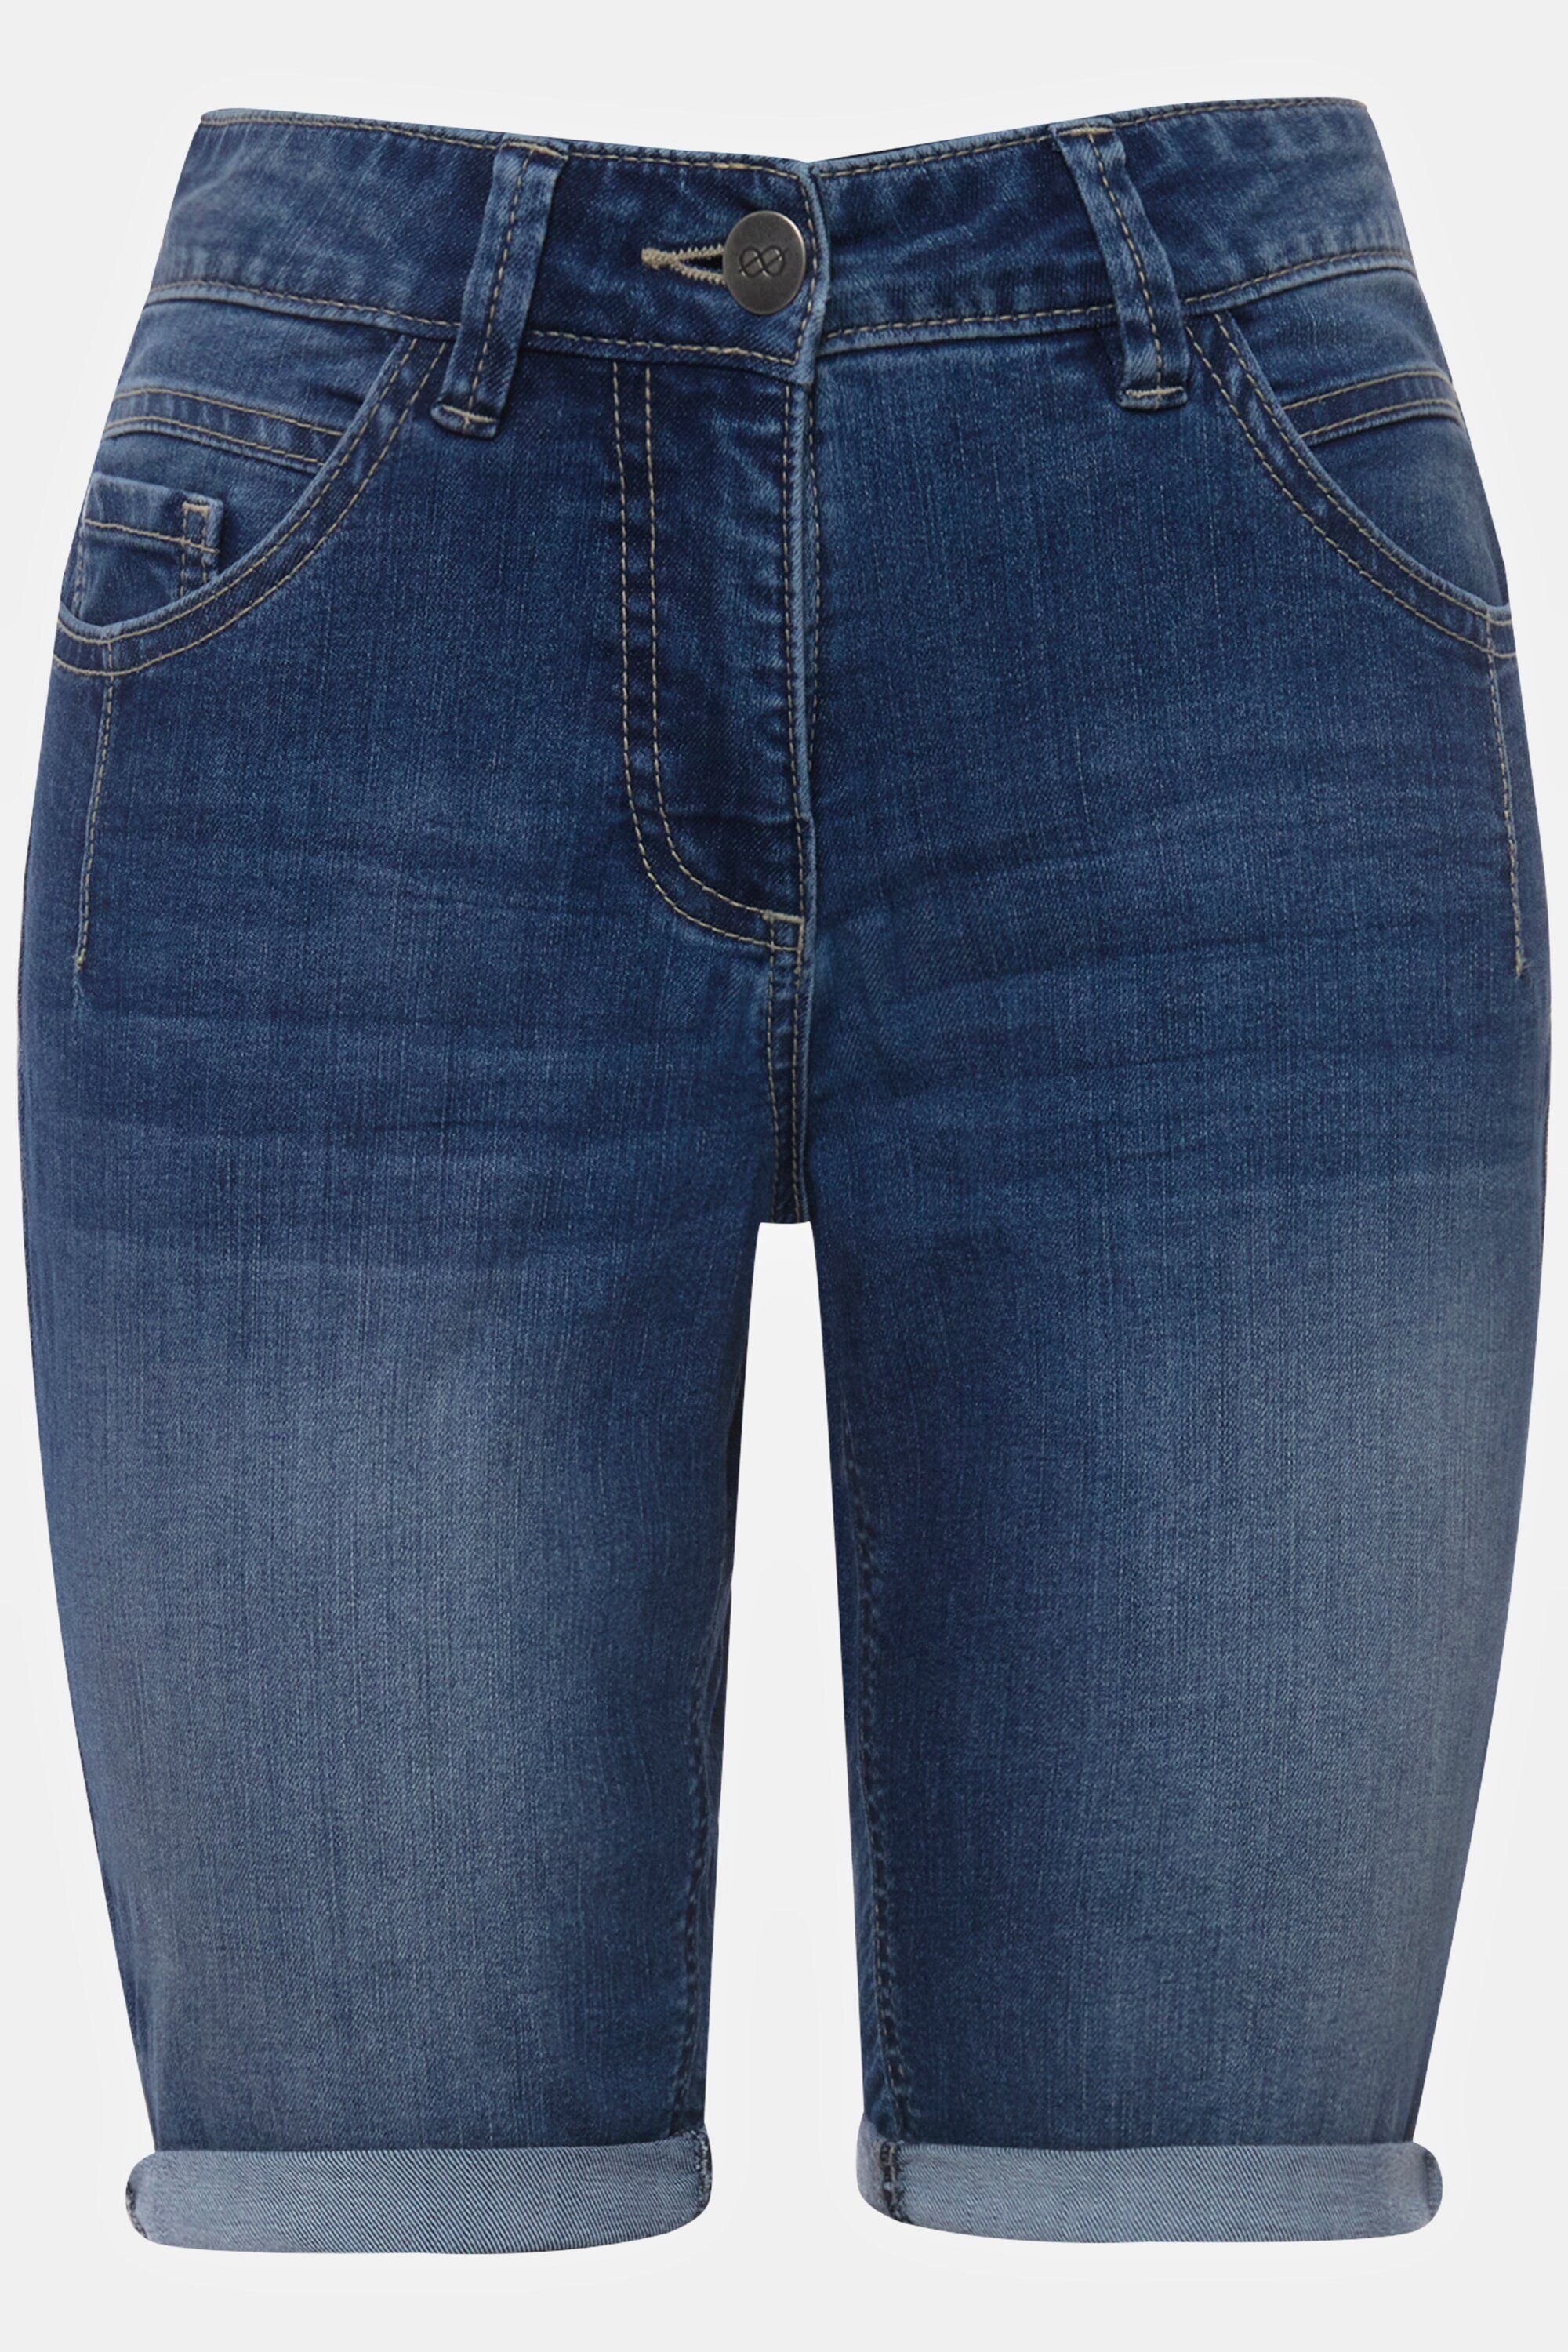 Jeans-Shorts denim blue 5-Pocket Regular-fit-Jeans Laurasøn Elastikbund